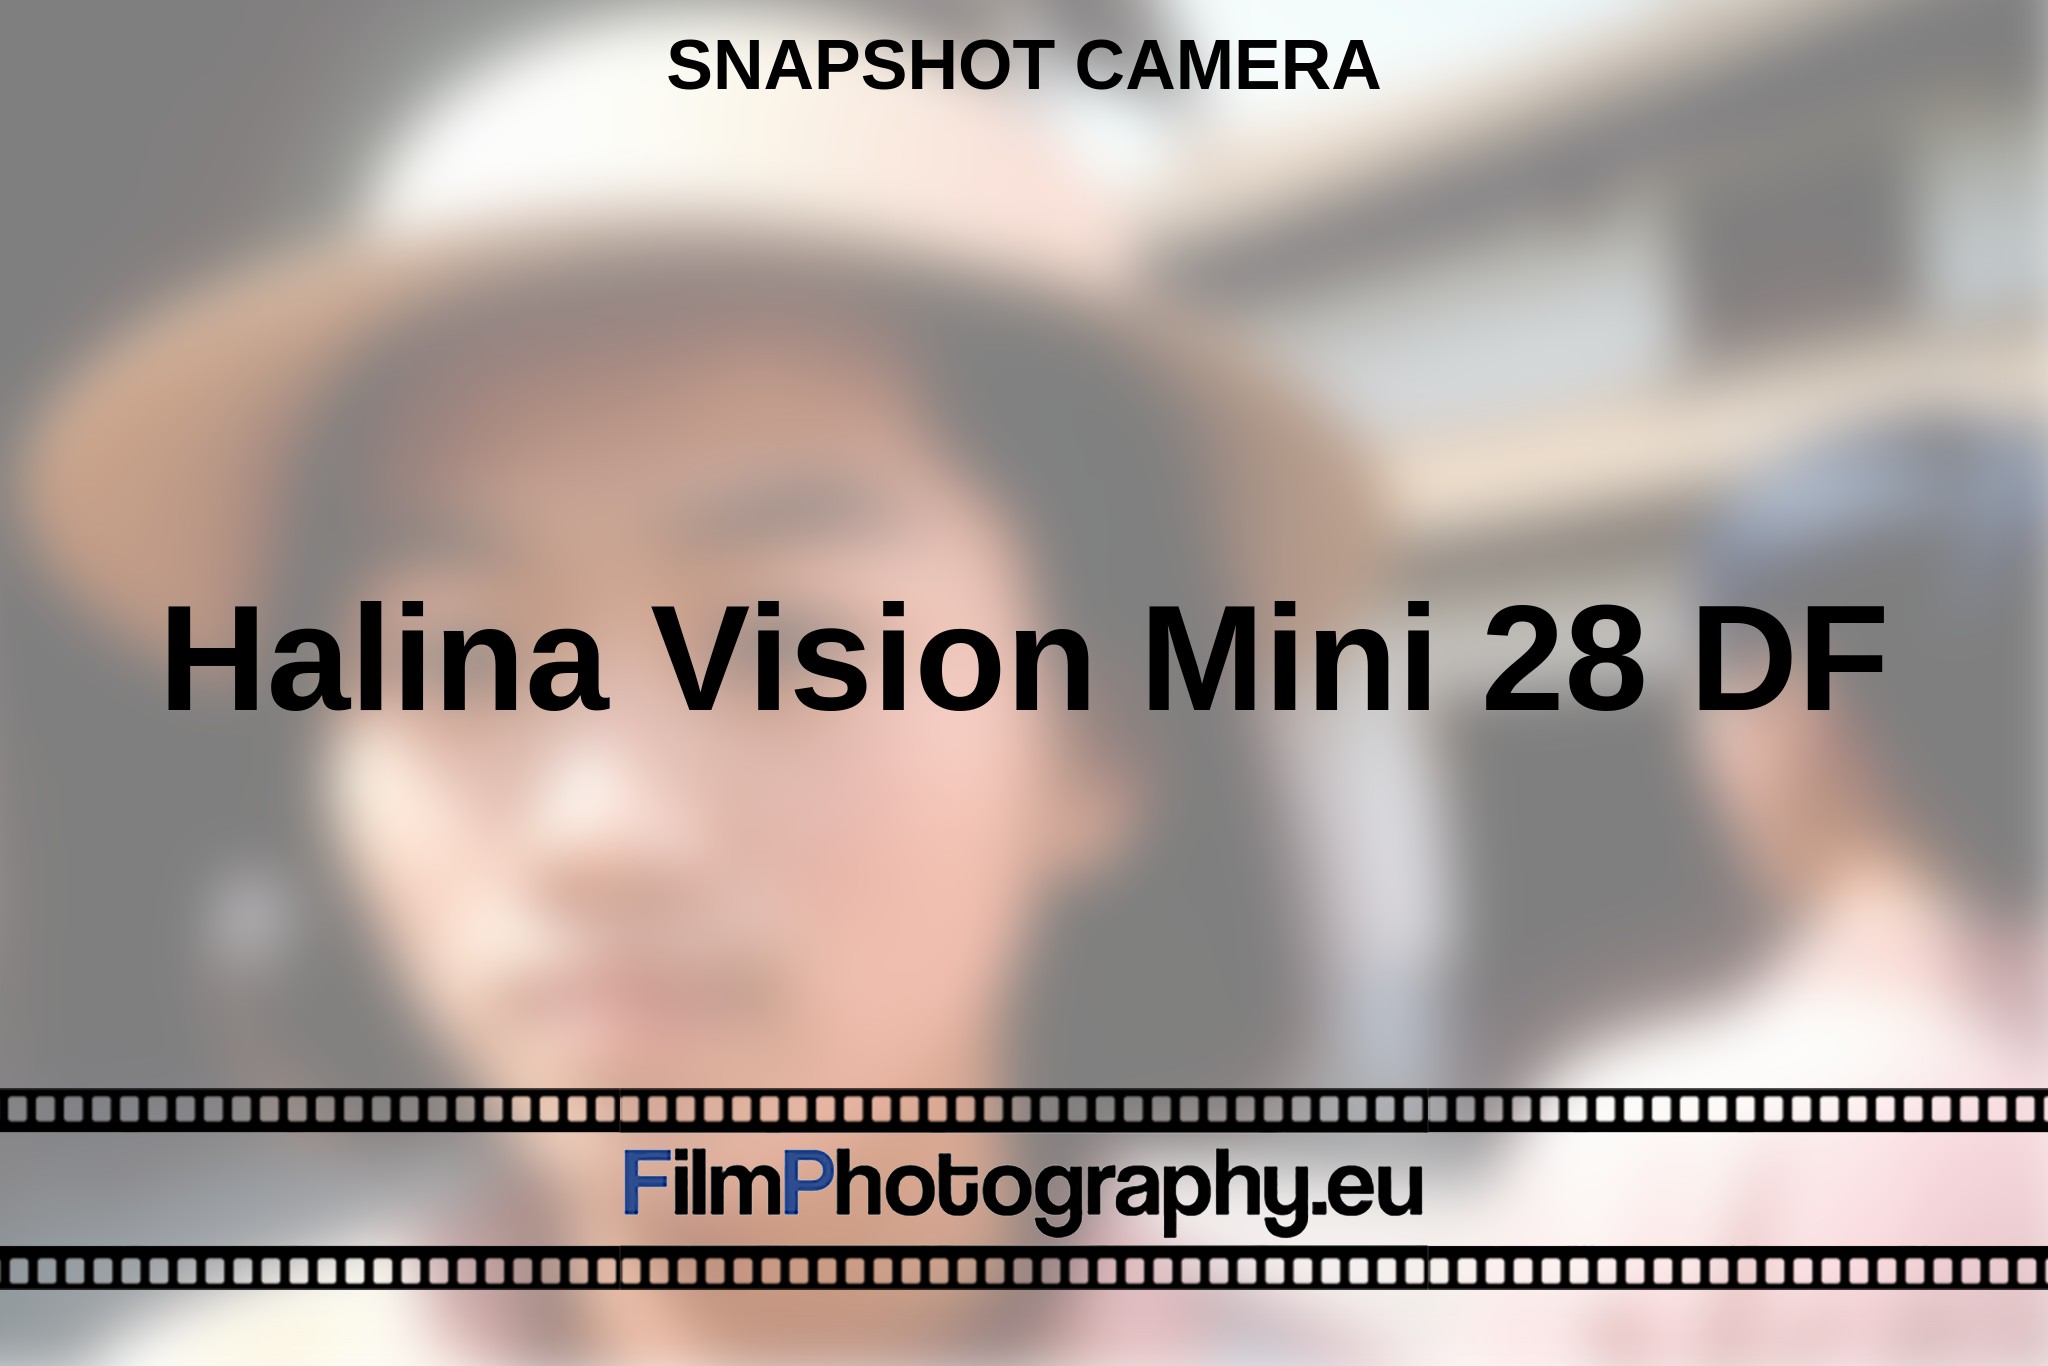 halina-vision-mini-28-df-snapshot-camera-en-bnv.jpg